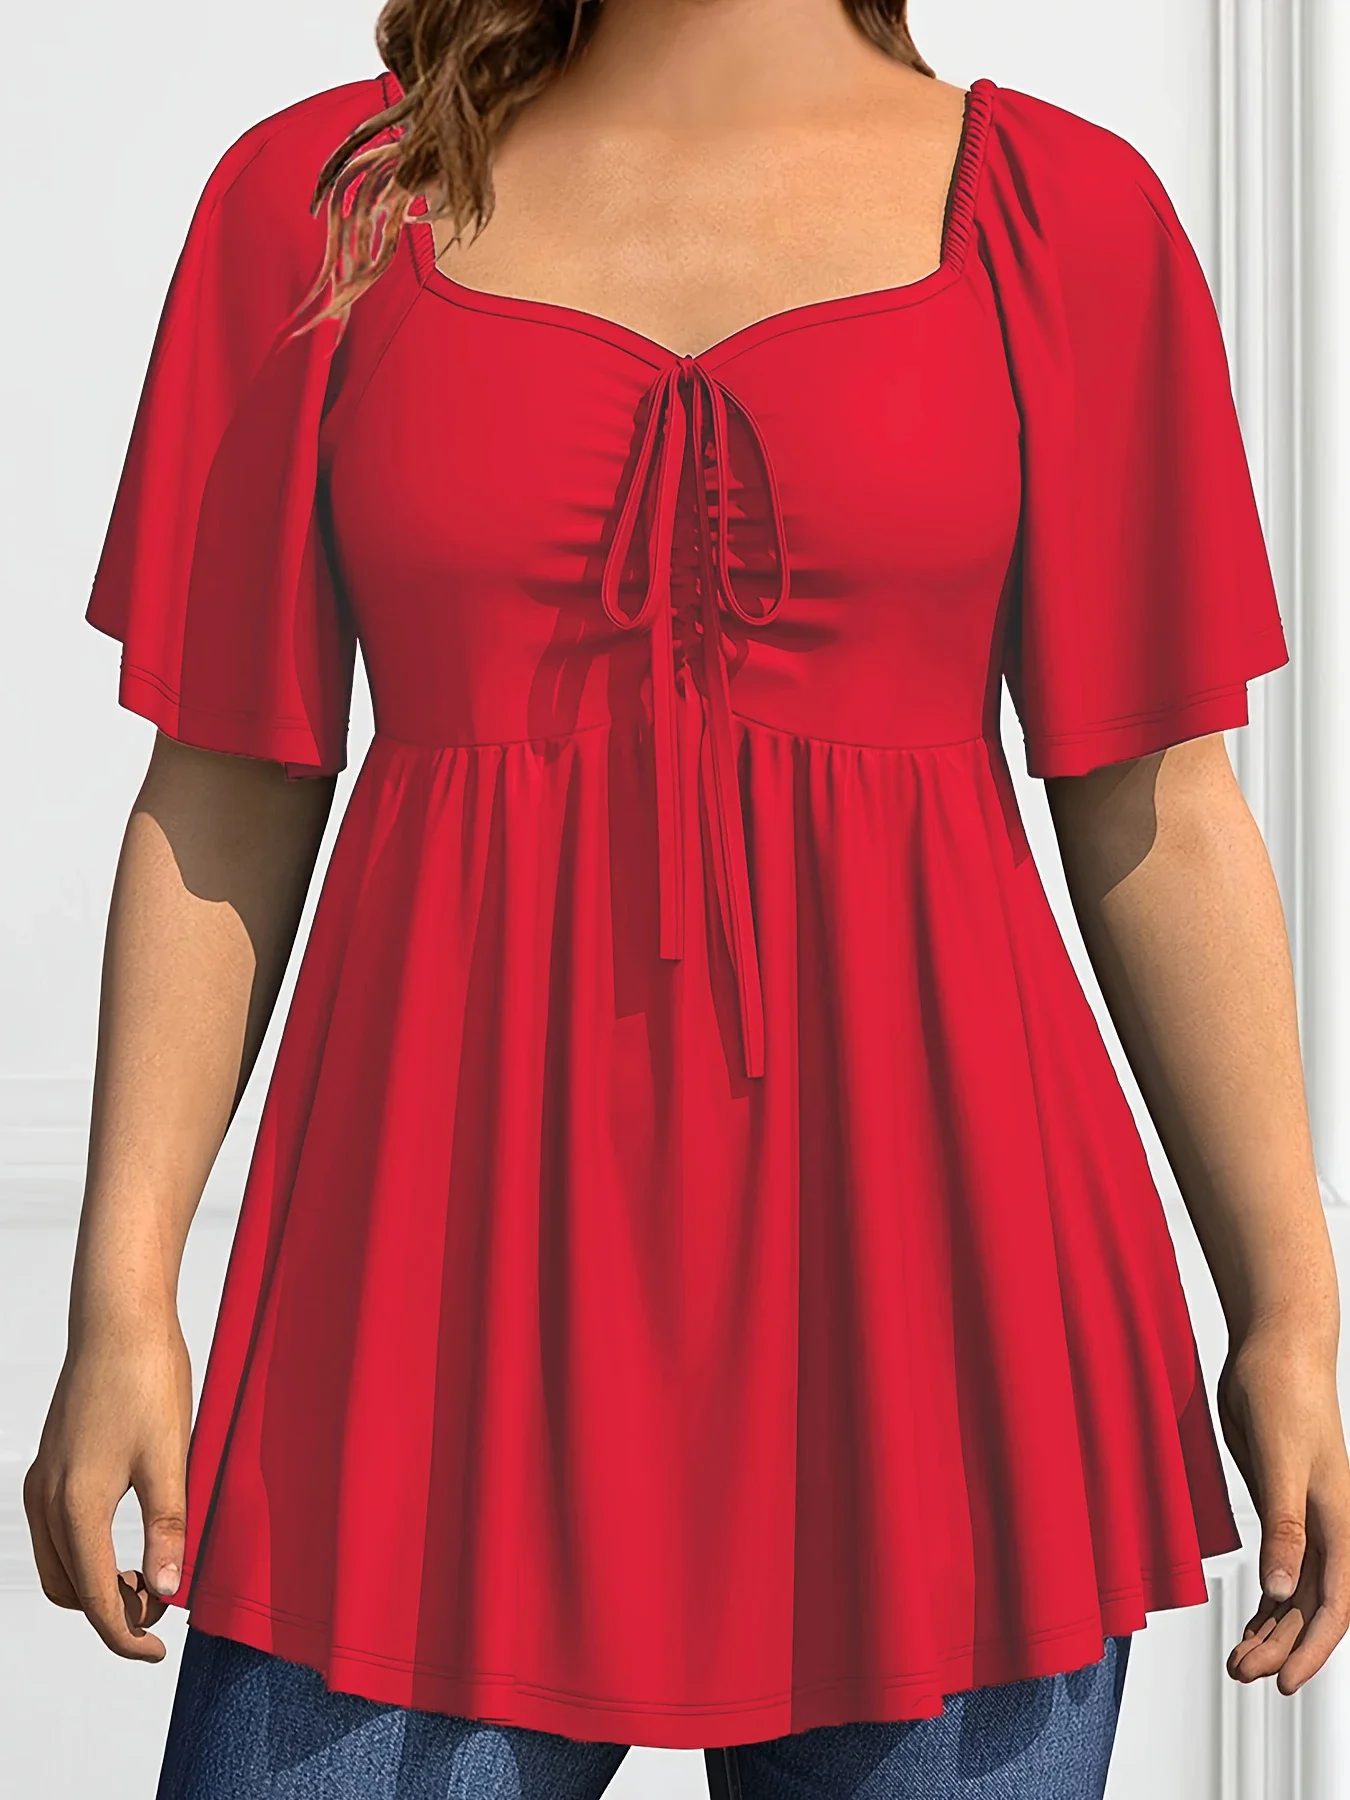 Женская плиссированная блузка с квадратным вырезом, коротким рукавом и кулиской